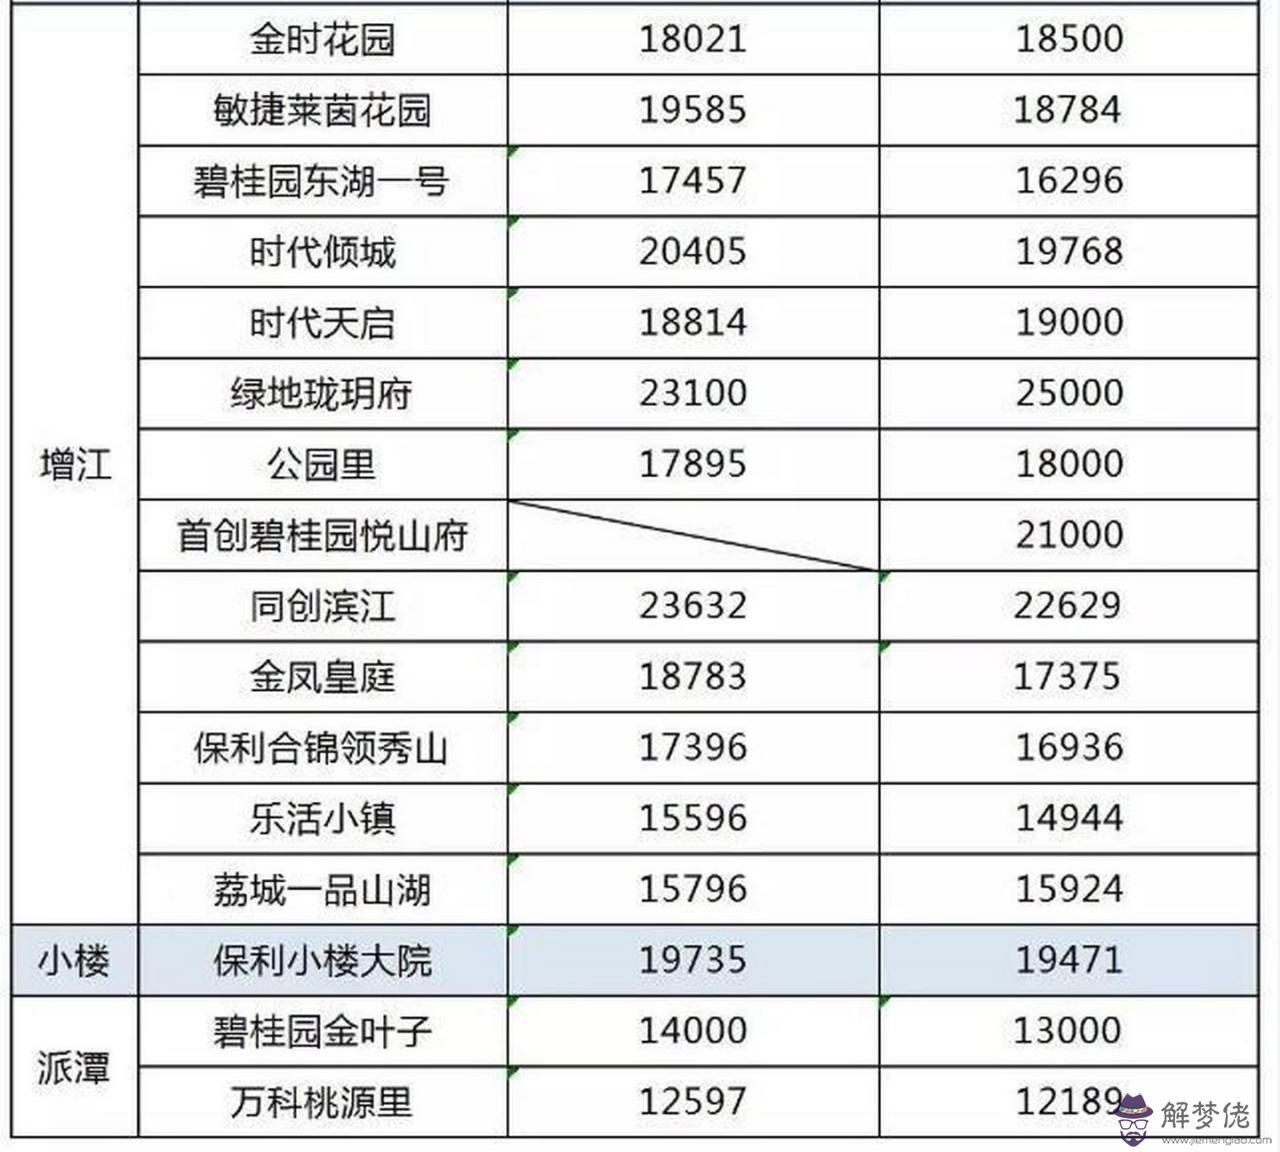 8、廣州房價35萬是真的嗎:廣州現在平均多少錢一